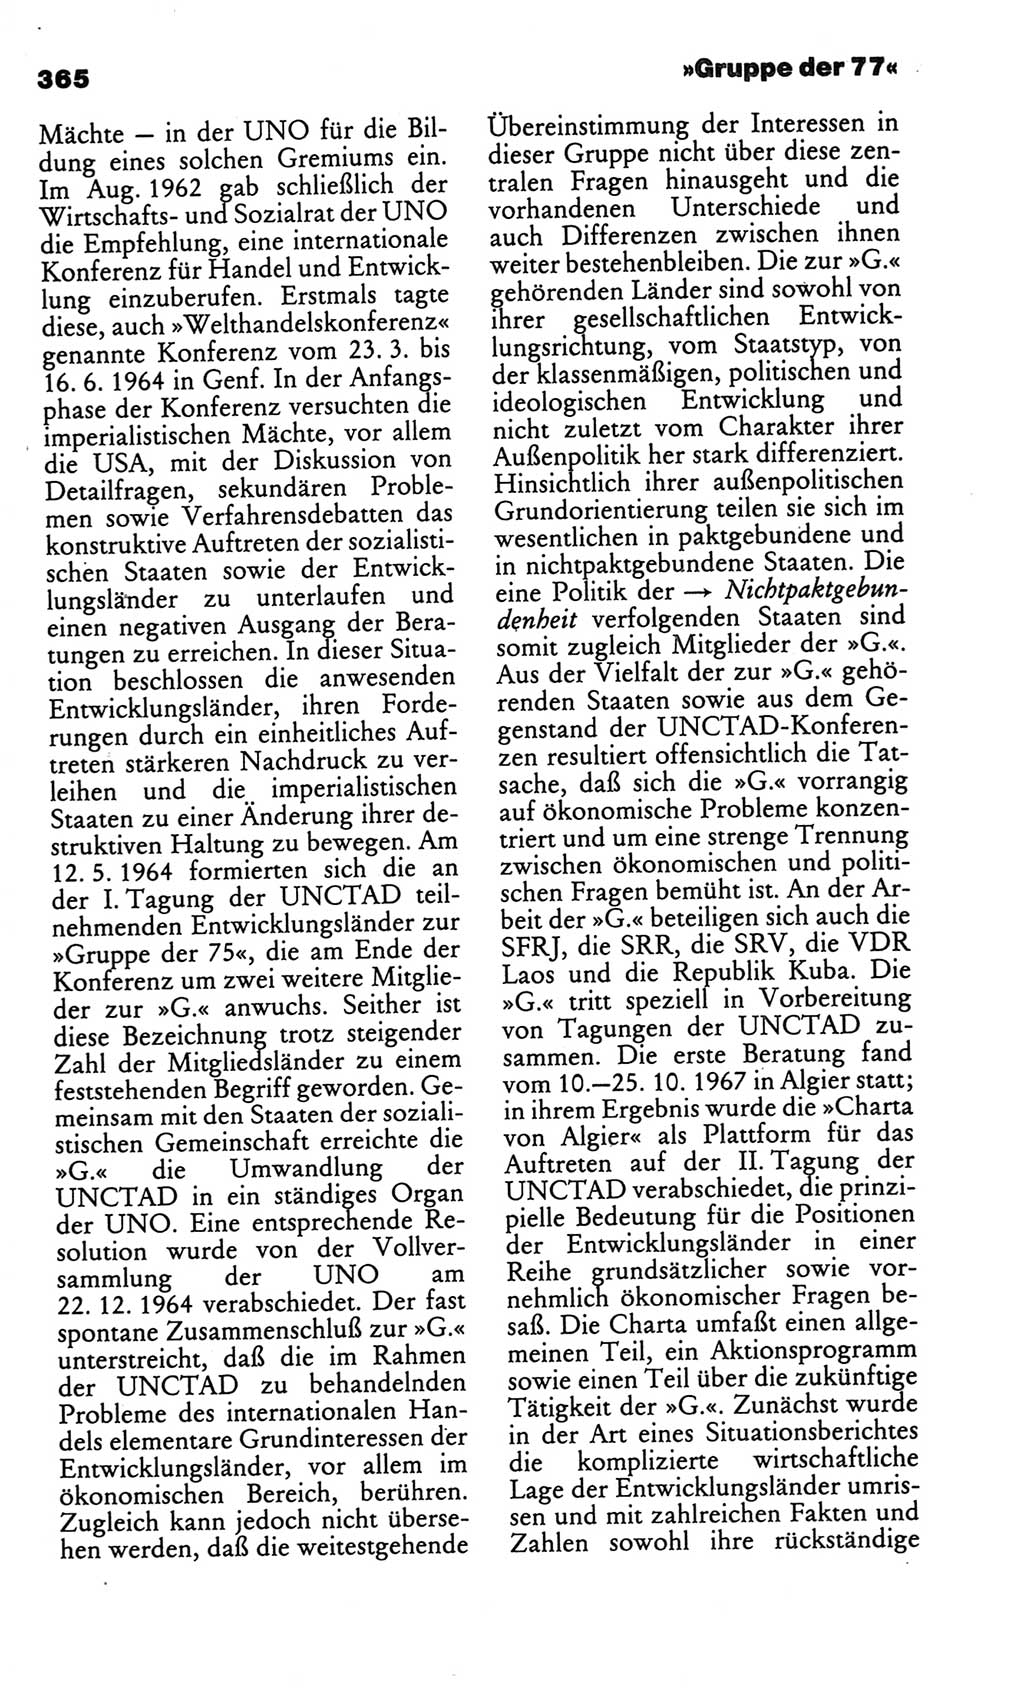 Kleines politisches Wörterbuch [Deutsche Demokratische Republik (DDR)] 1986, Seite 365 (Kl. pol. Wb. DDR 1986, S. 365)